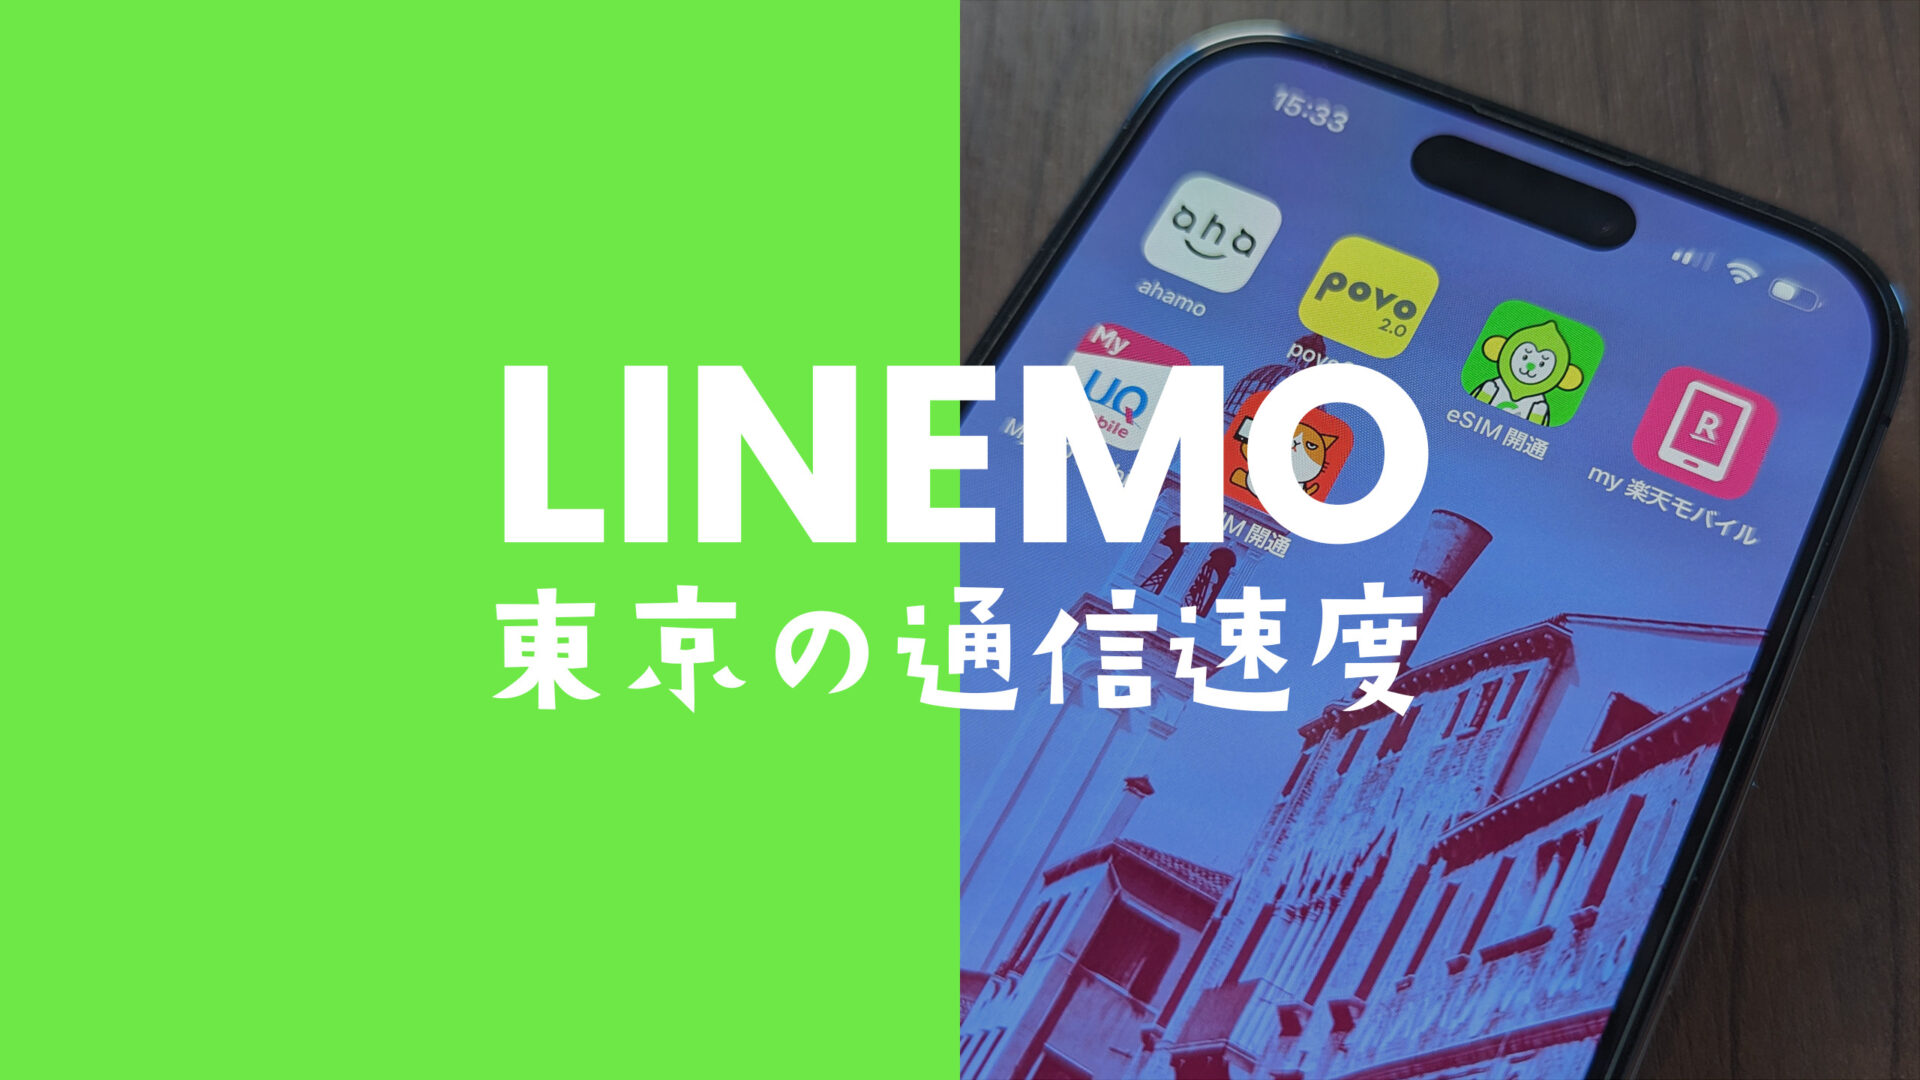 LINEMO(ラインモ)の東京都内&23区の通信速度の実測値平均データ。電波を比較。のサムネイル画像